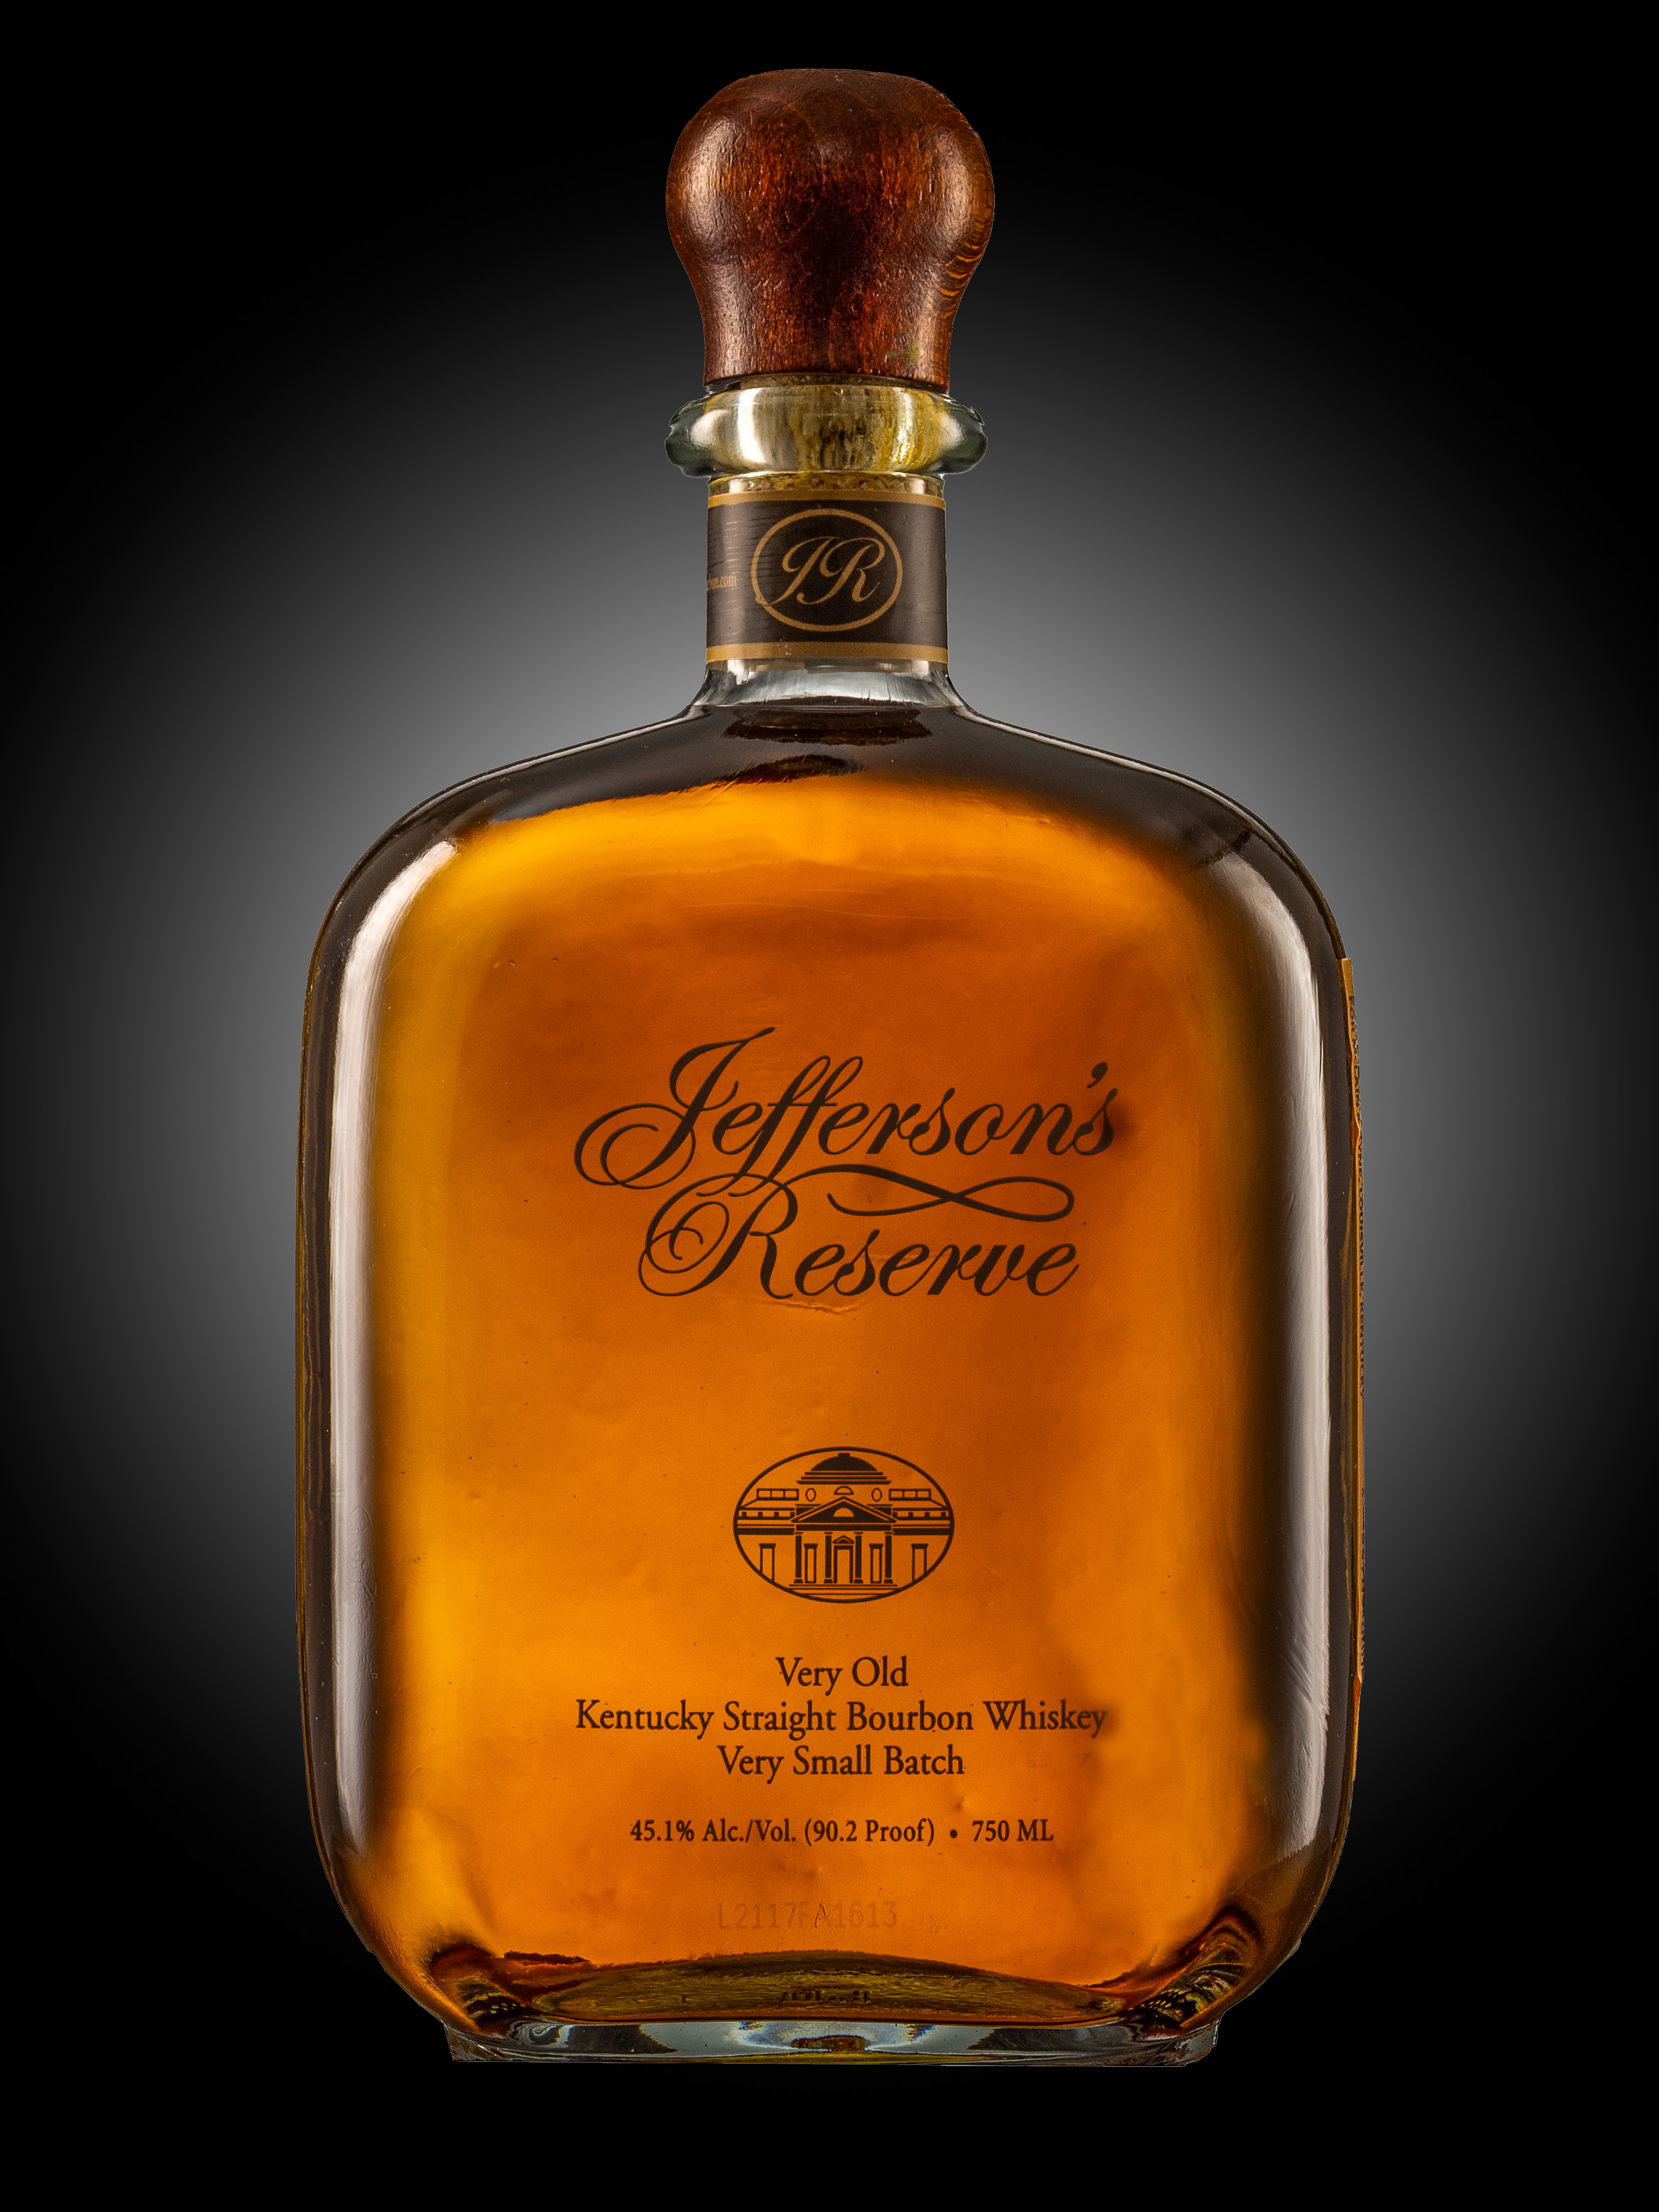 Jefferson's Reserve bourbon